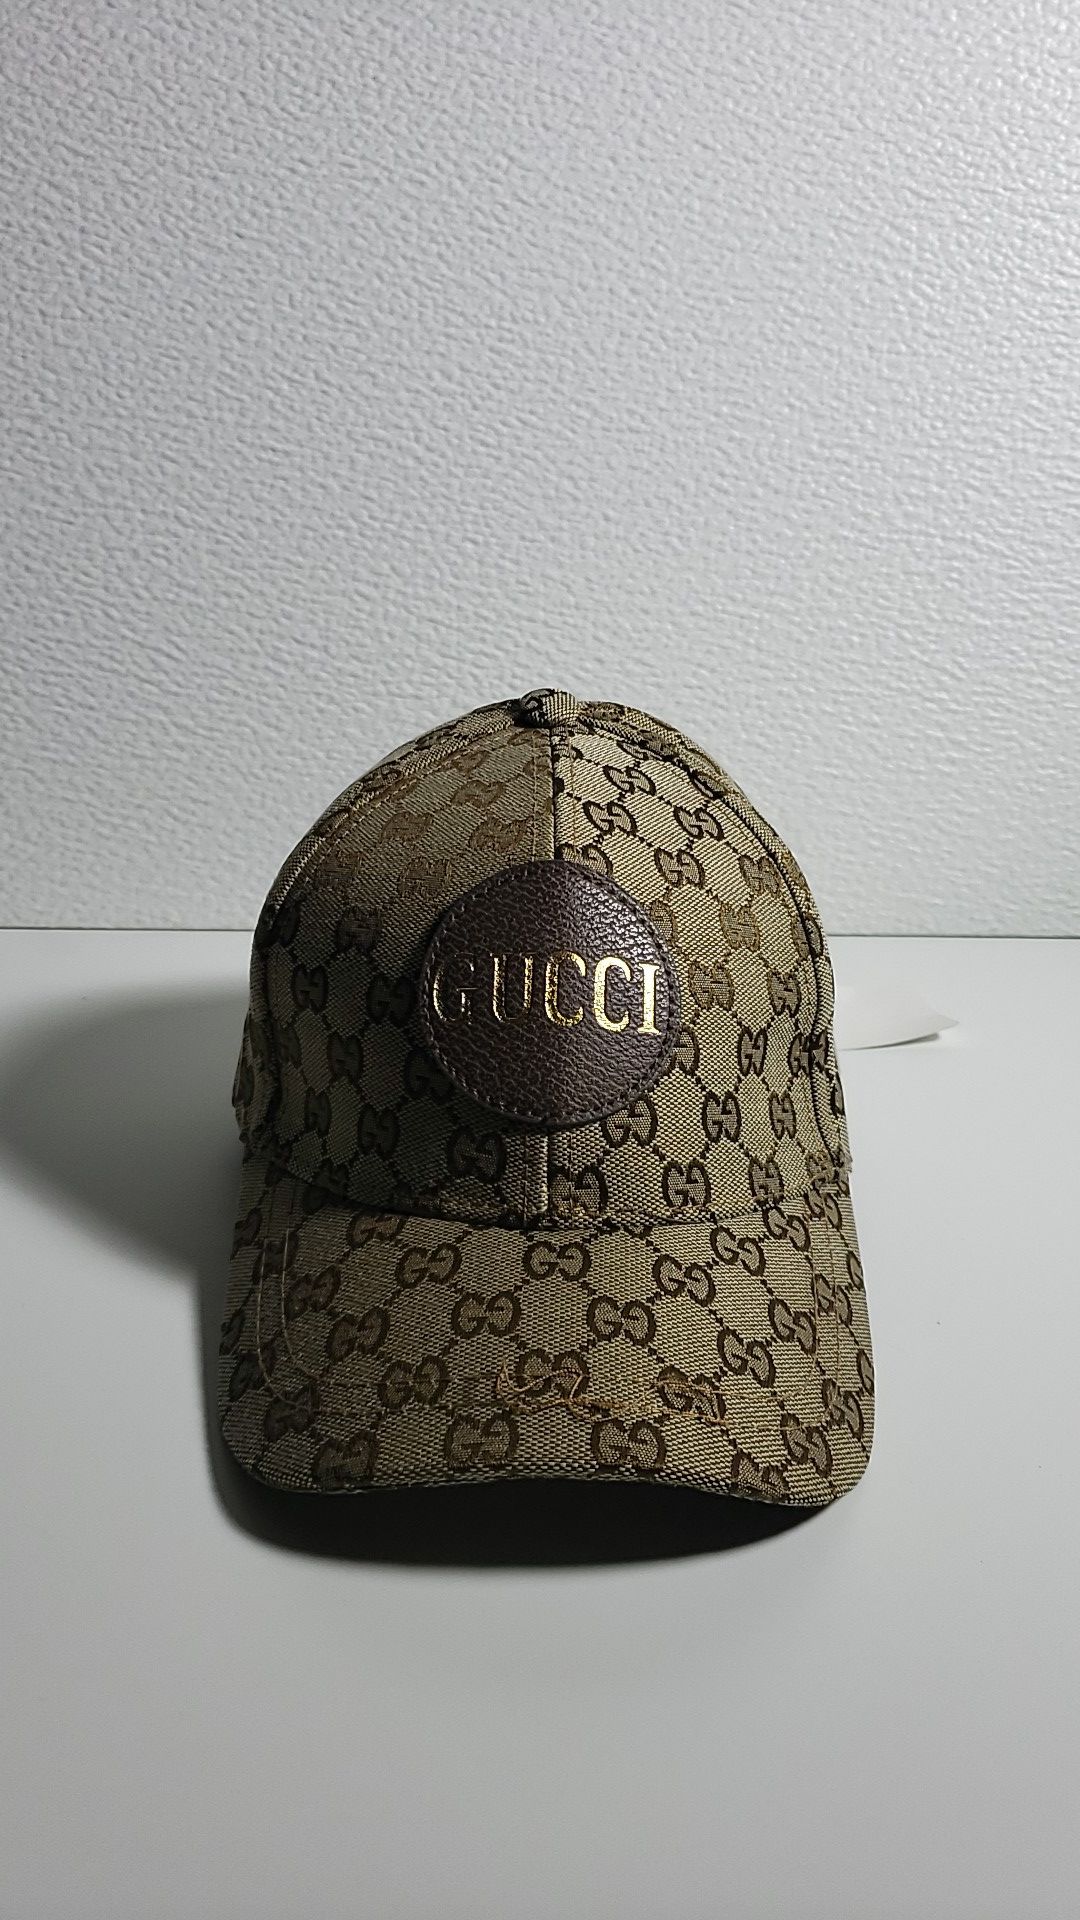 Gucci hat/Cap